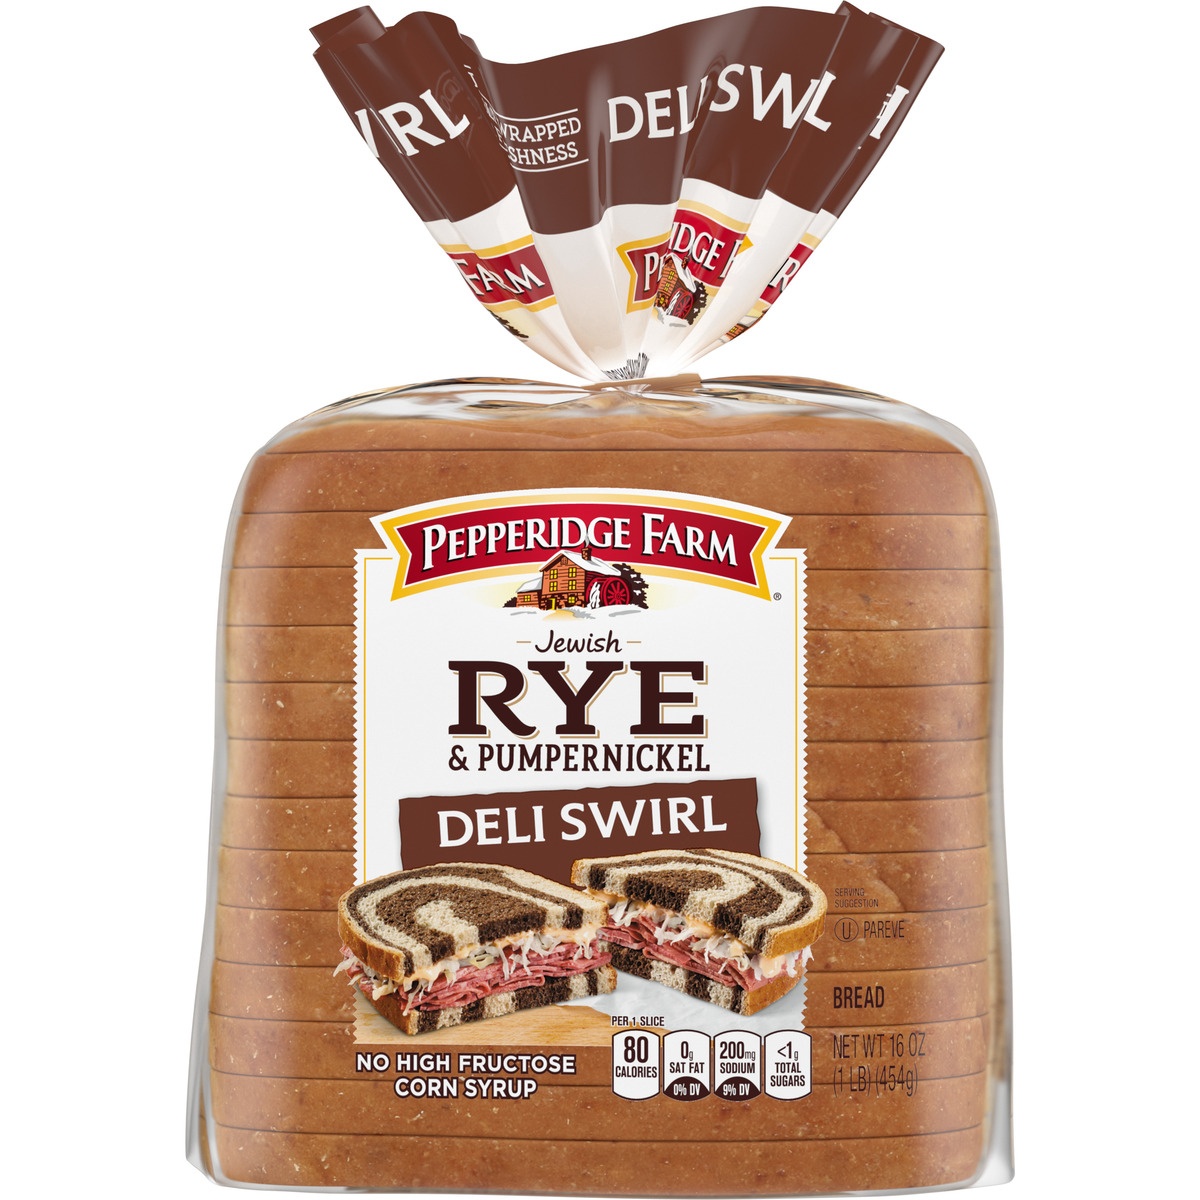 slide 9 of 11, Pepperidge Farm Rye & Pumpernickel Deli Swirl Bread, 16 oz